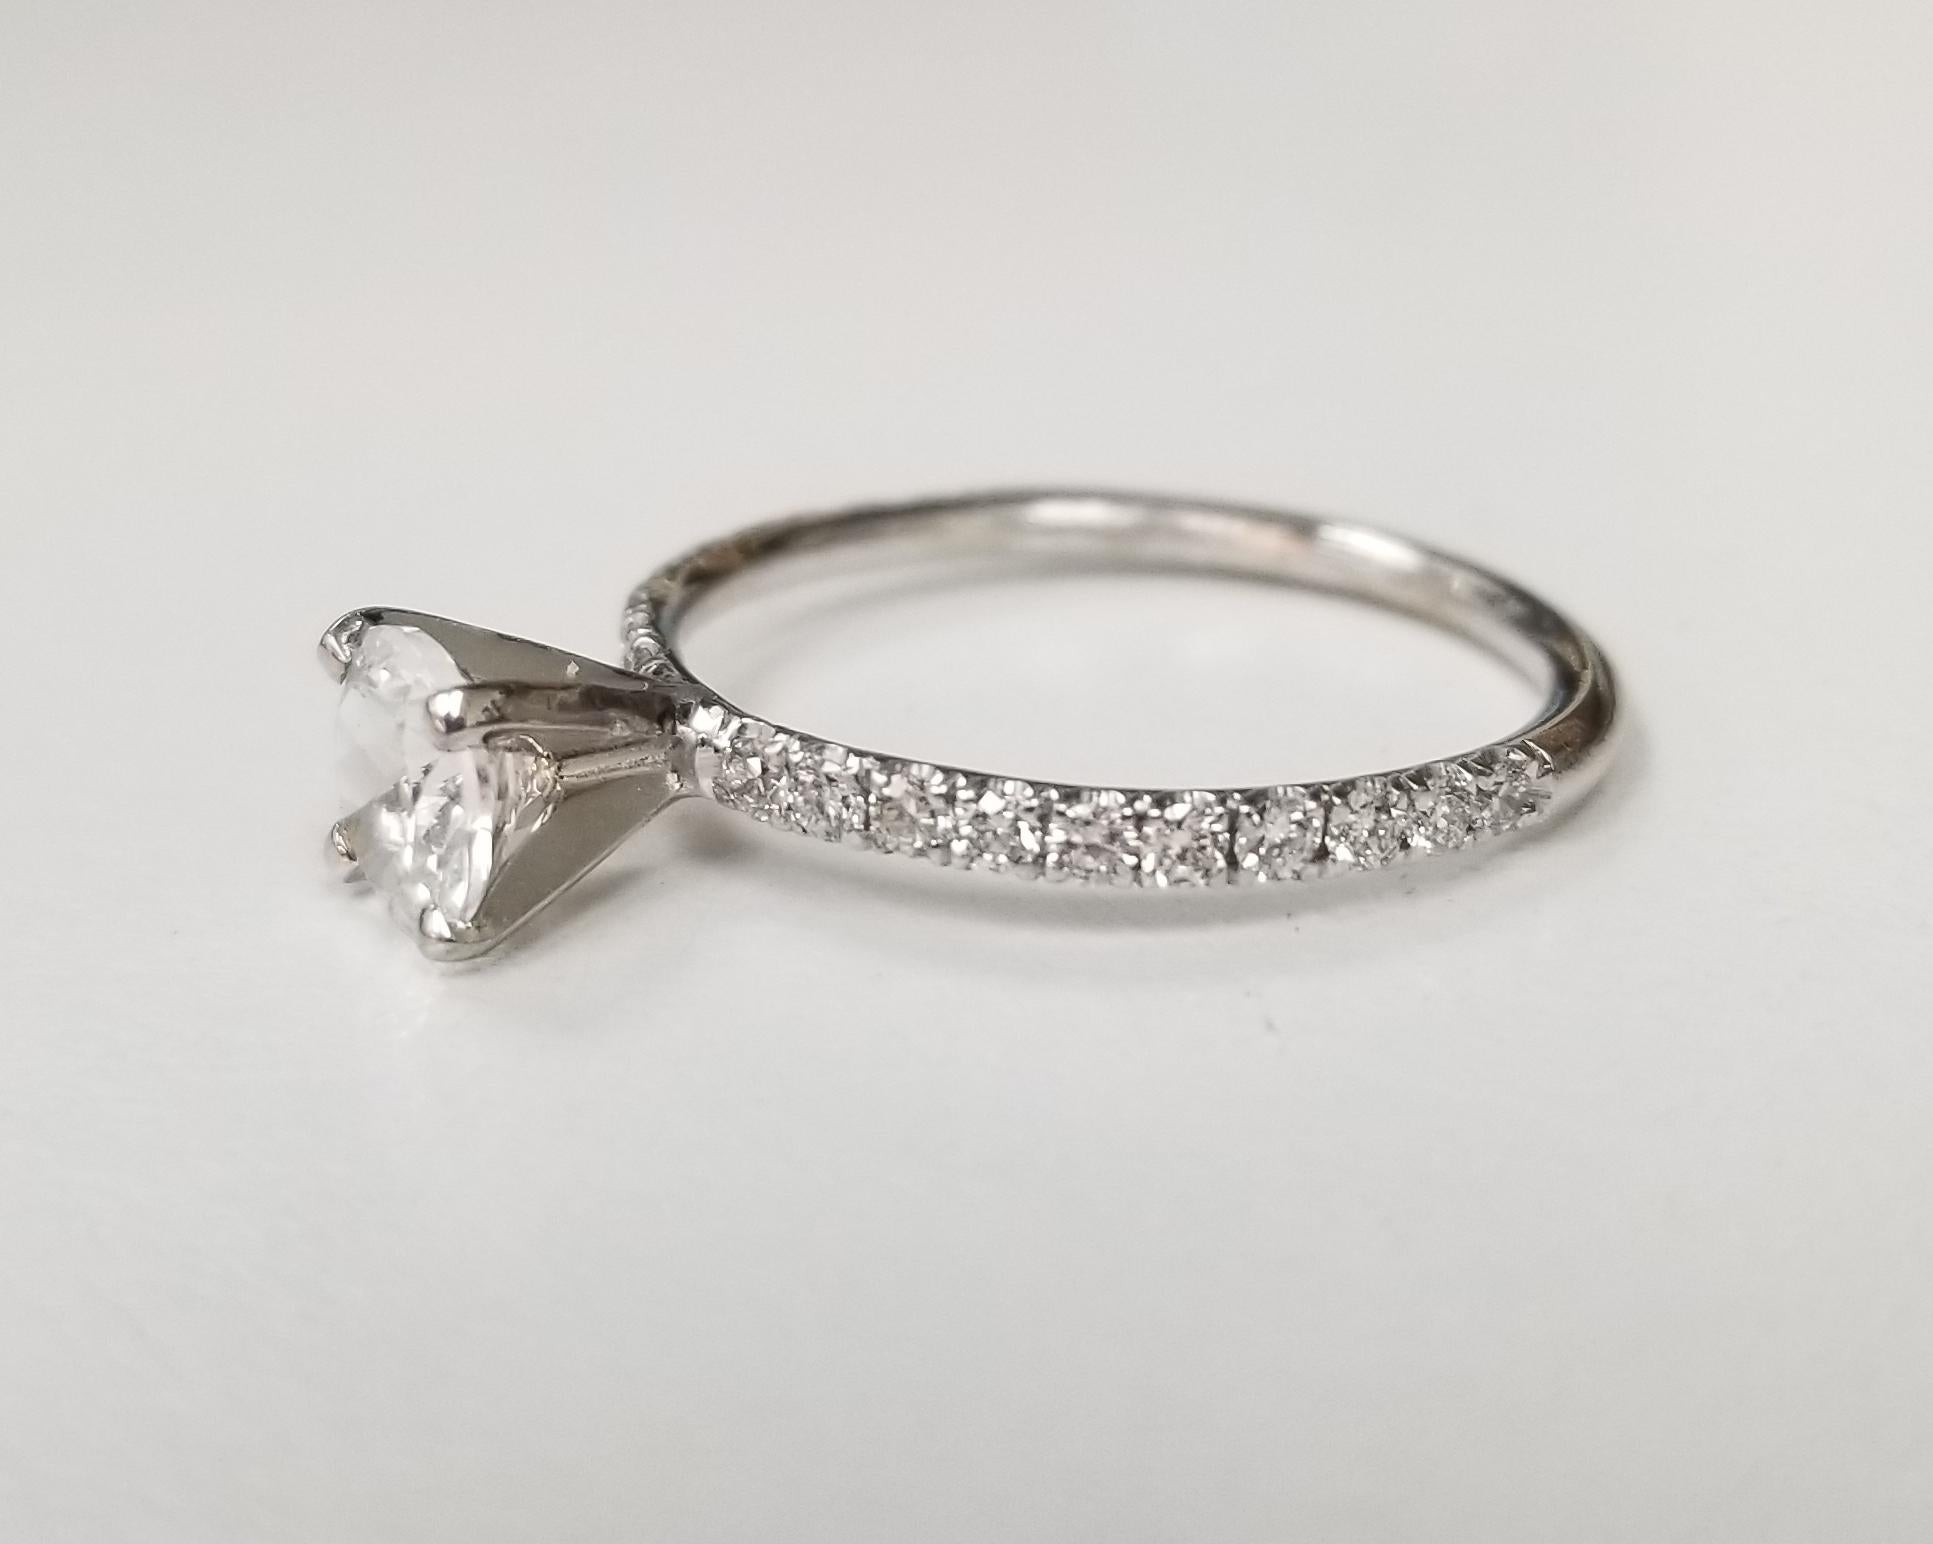 14k Weißgold Diamant-Verlobungsring mit weißem Saphir Zentrum enthalten; 1 5,75mm runden weißen Saphir und 20 runde voll geschliffene Diamanten mit einem Gewicht von .30pts. der Ring ist eine Größe 6,25 und kann auf die Größe kostenlos passen.